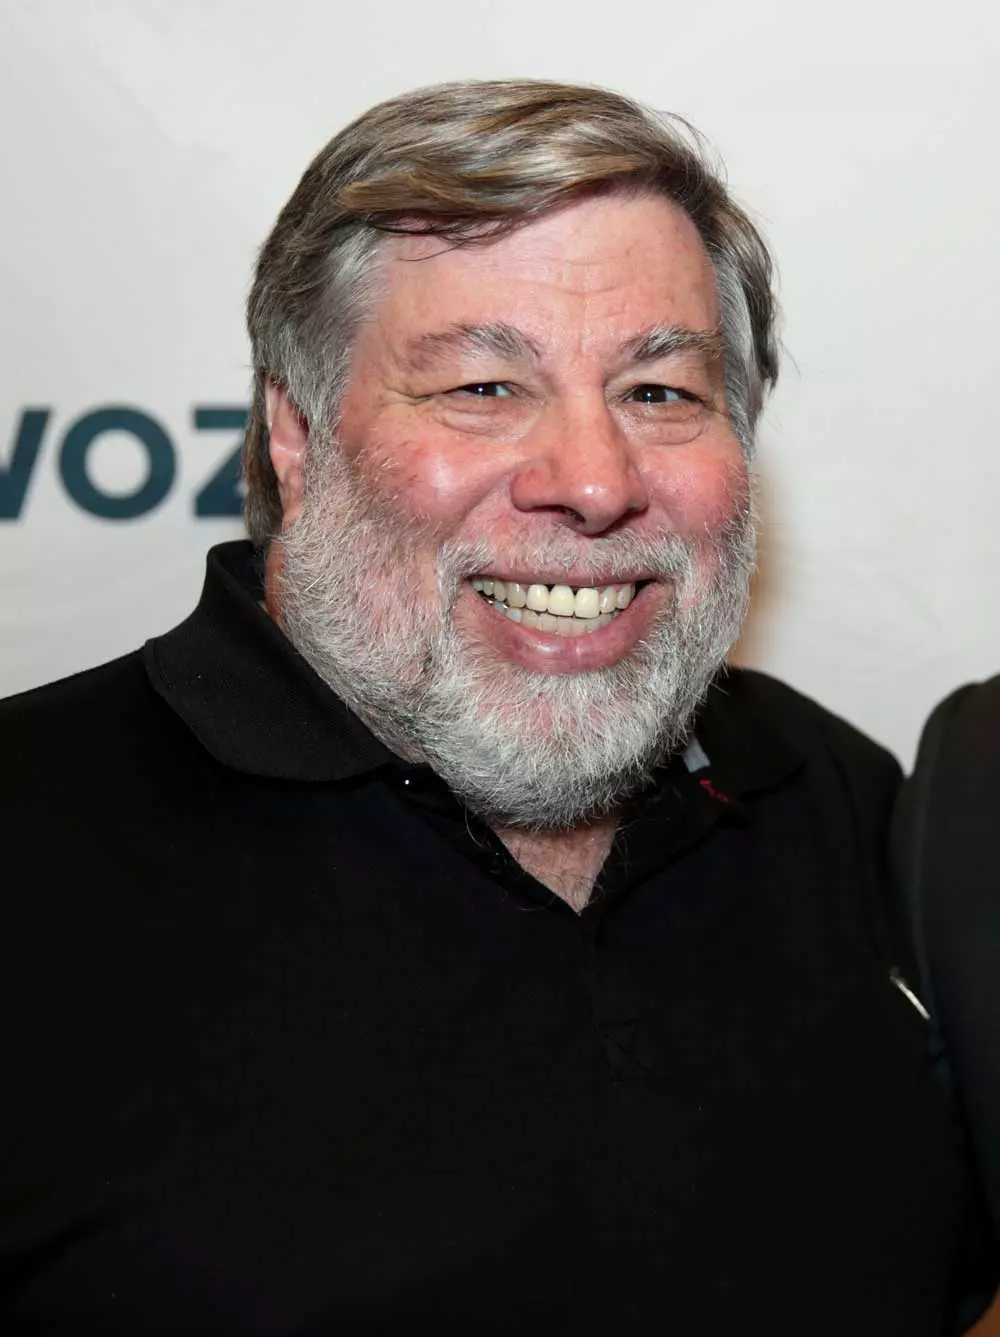 Steve-Wozniak-beard